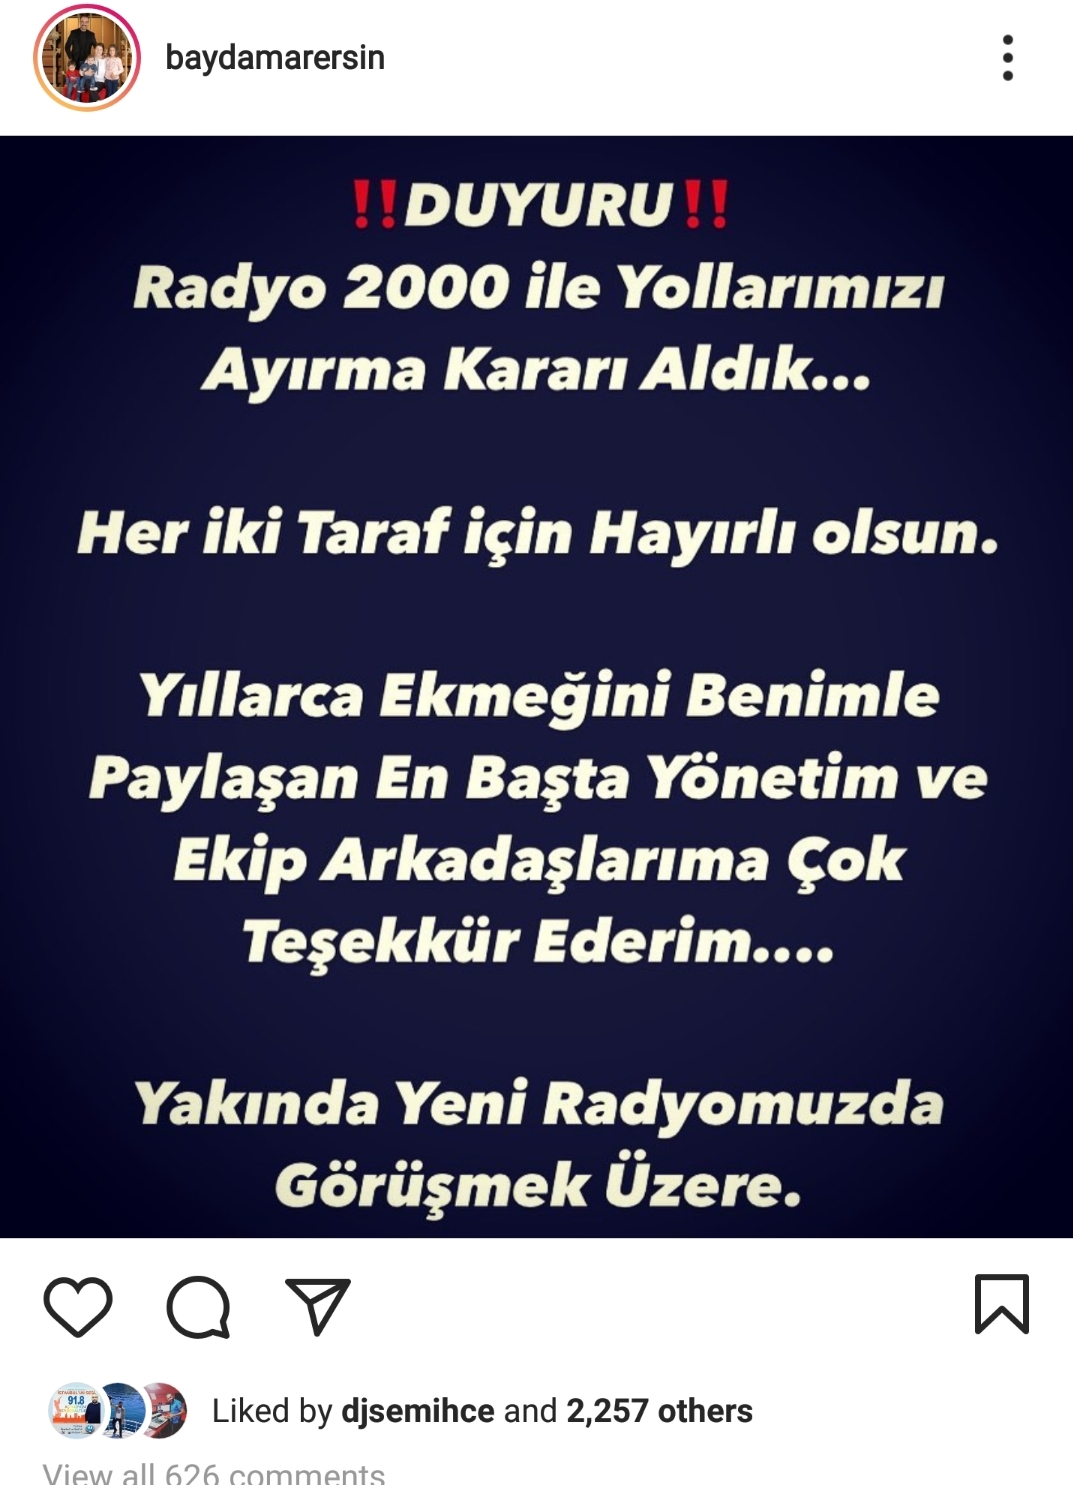 baydamar ersin radyo 2000 istanbulun sesi instagram